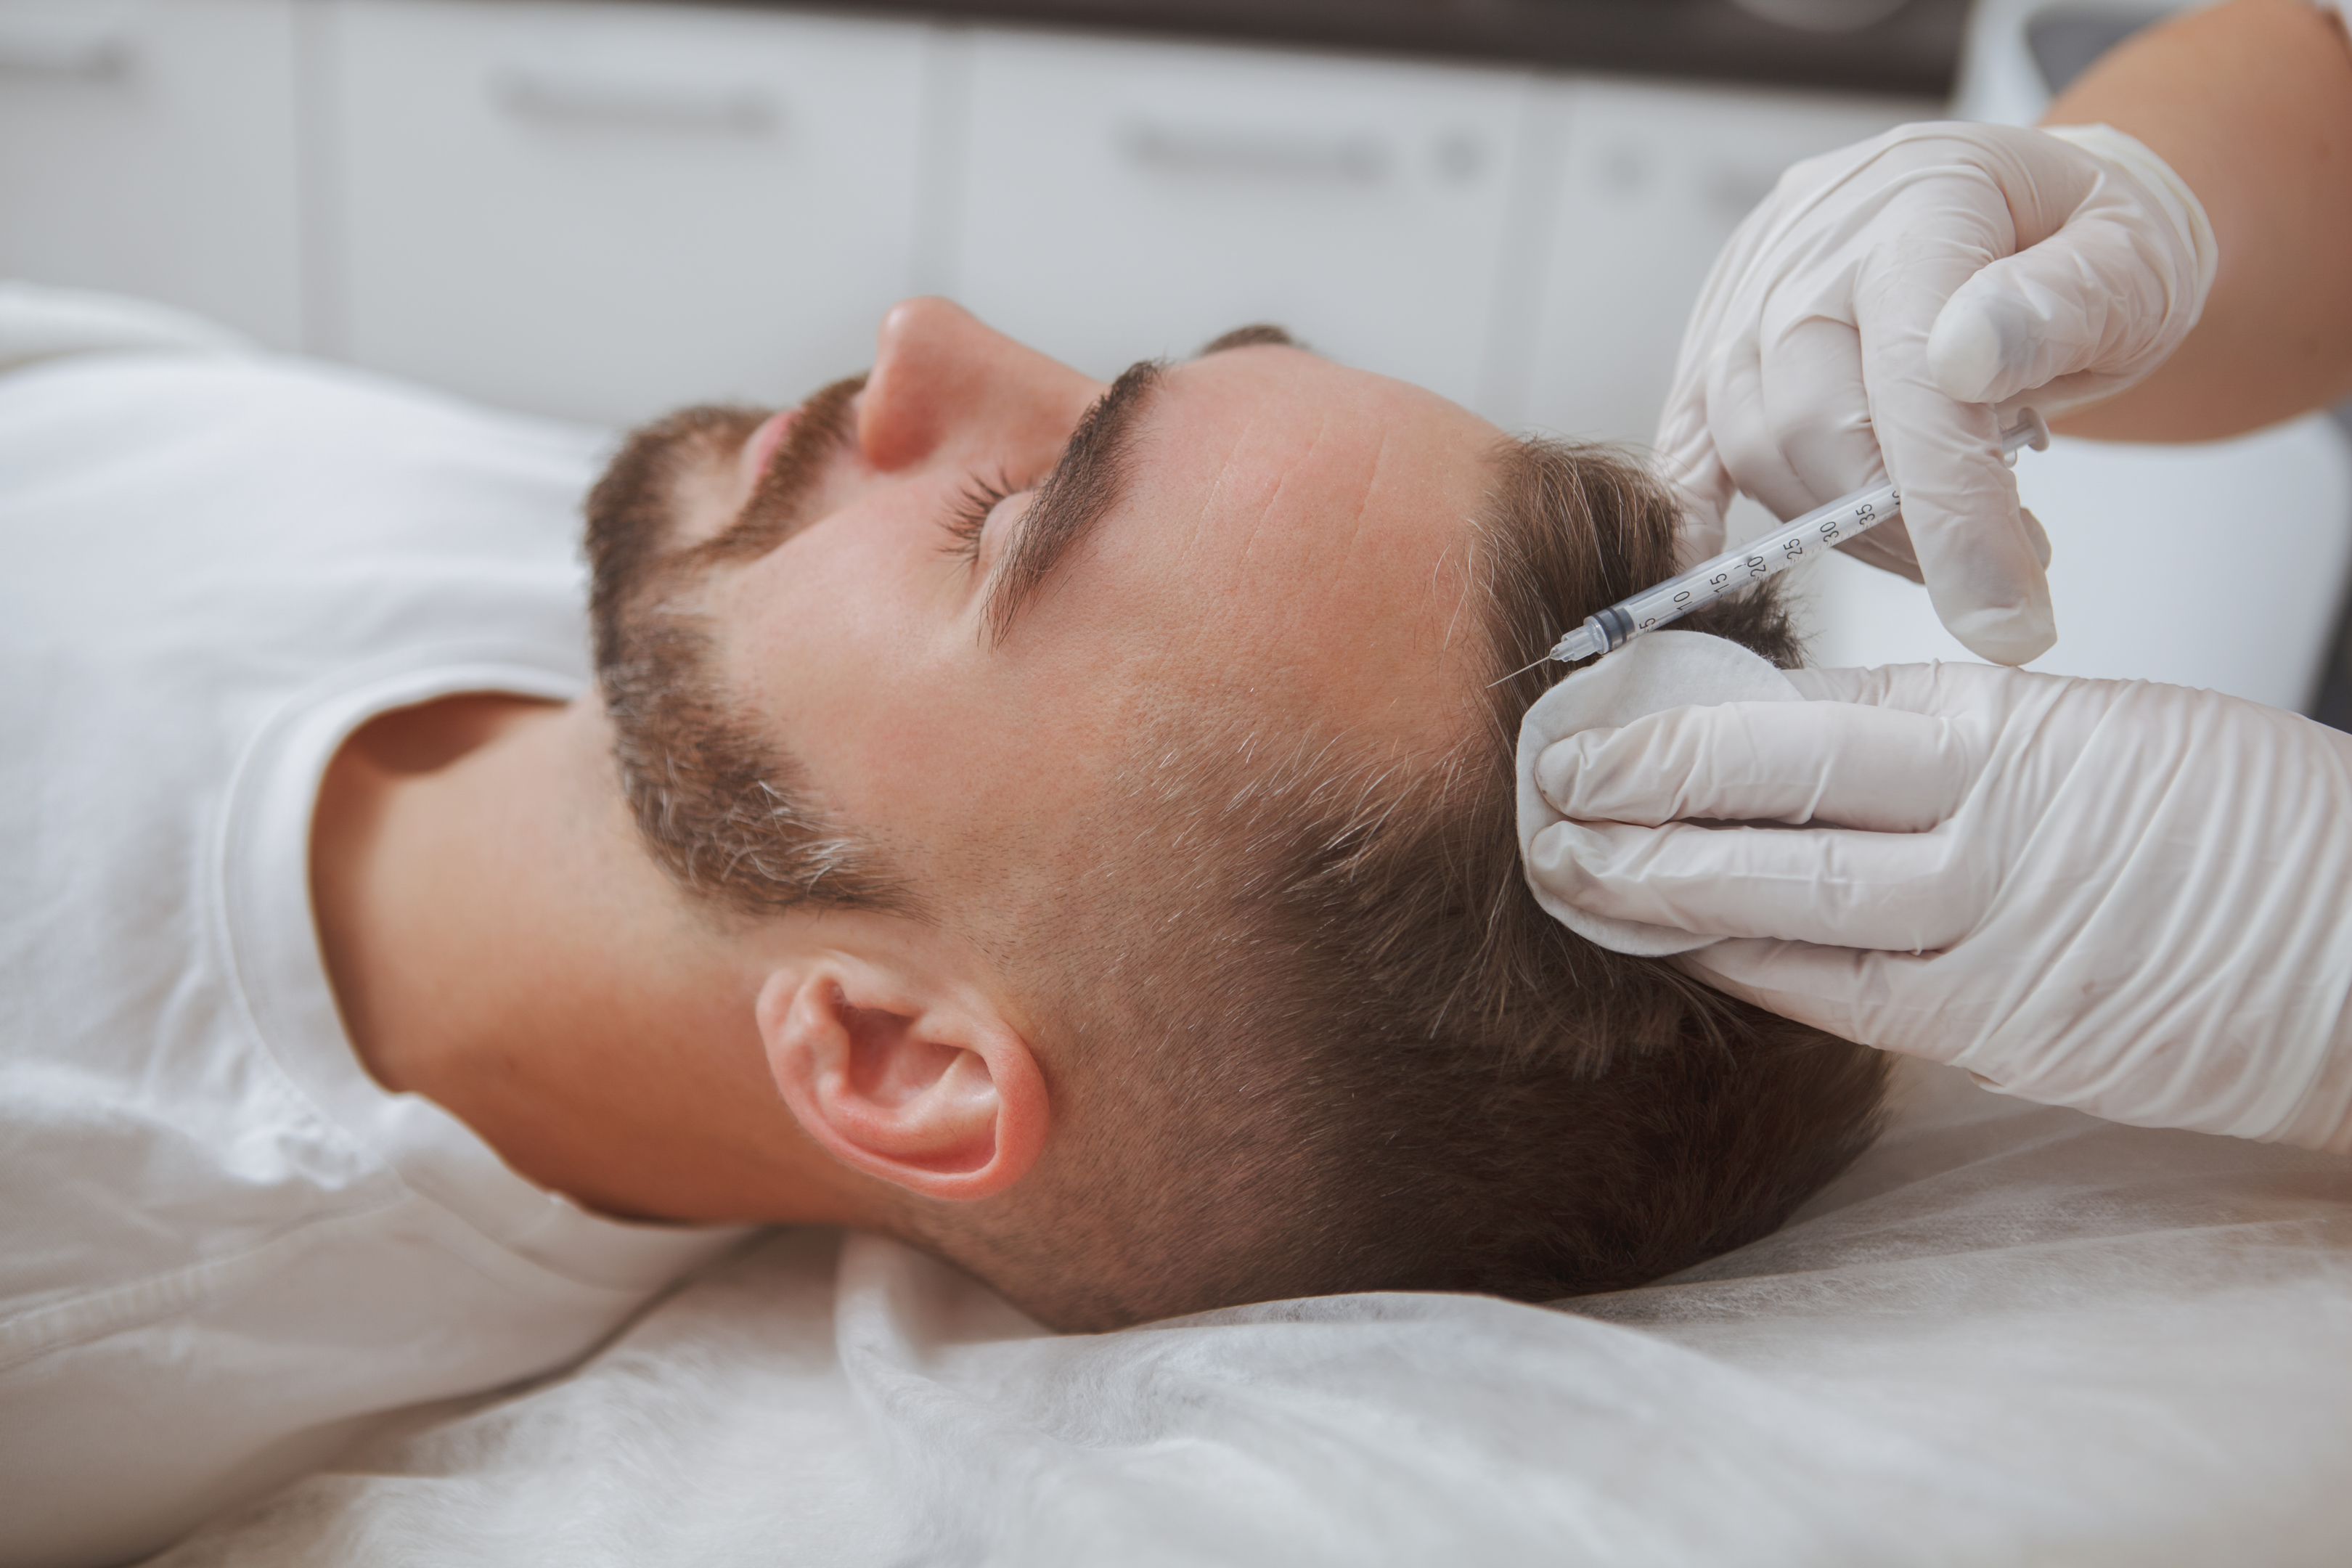 A man receiving treatment for hair loss.